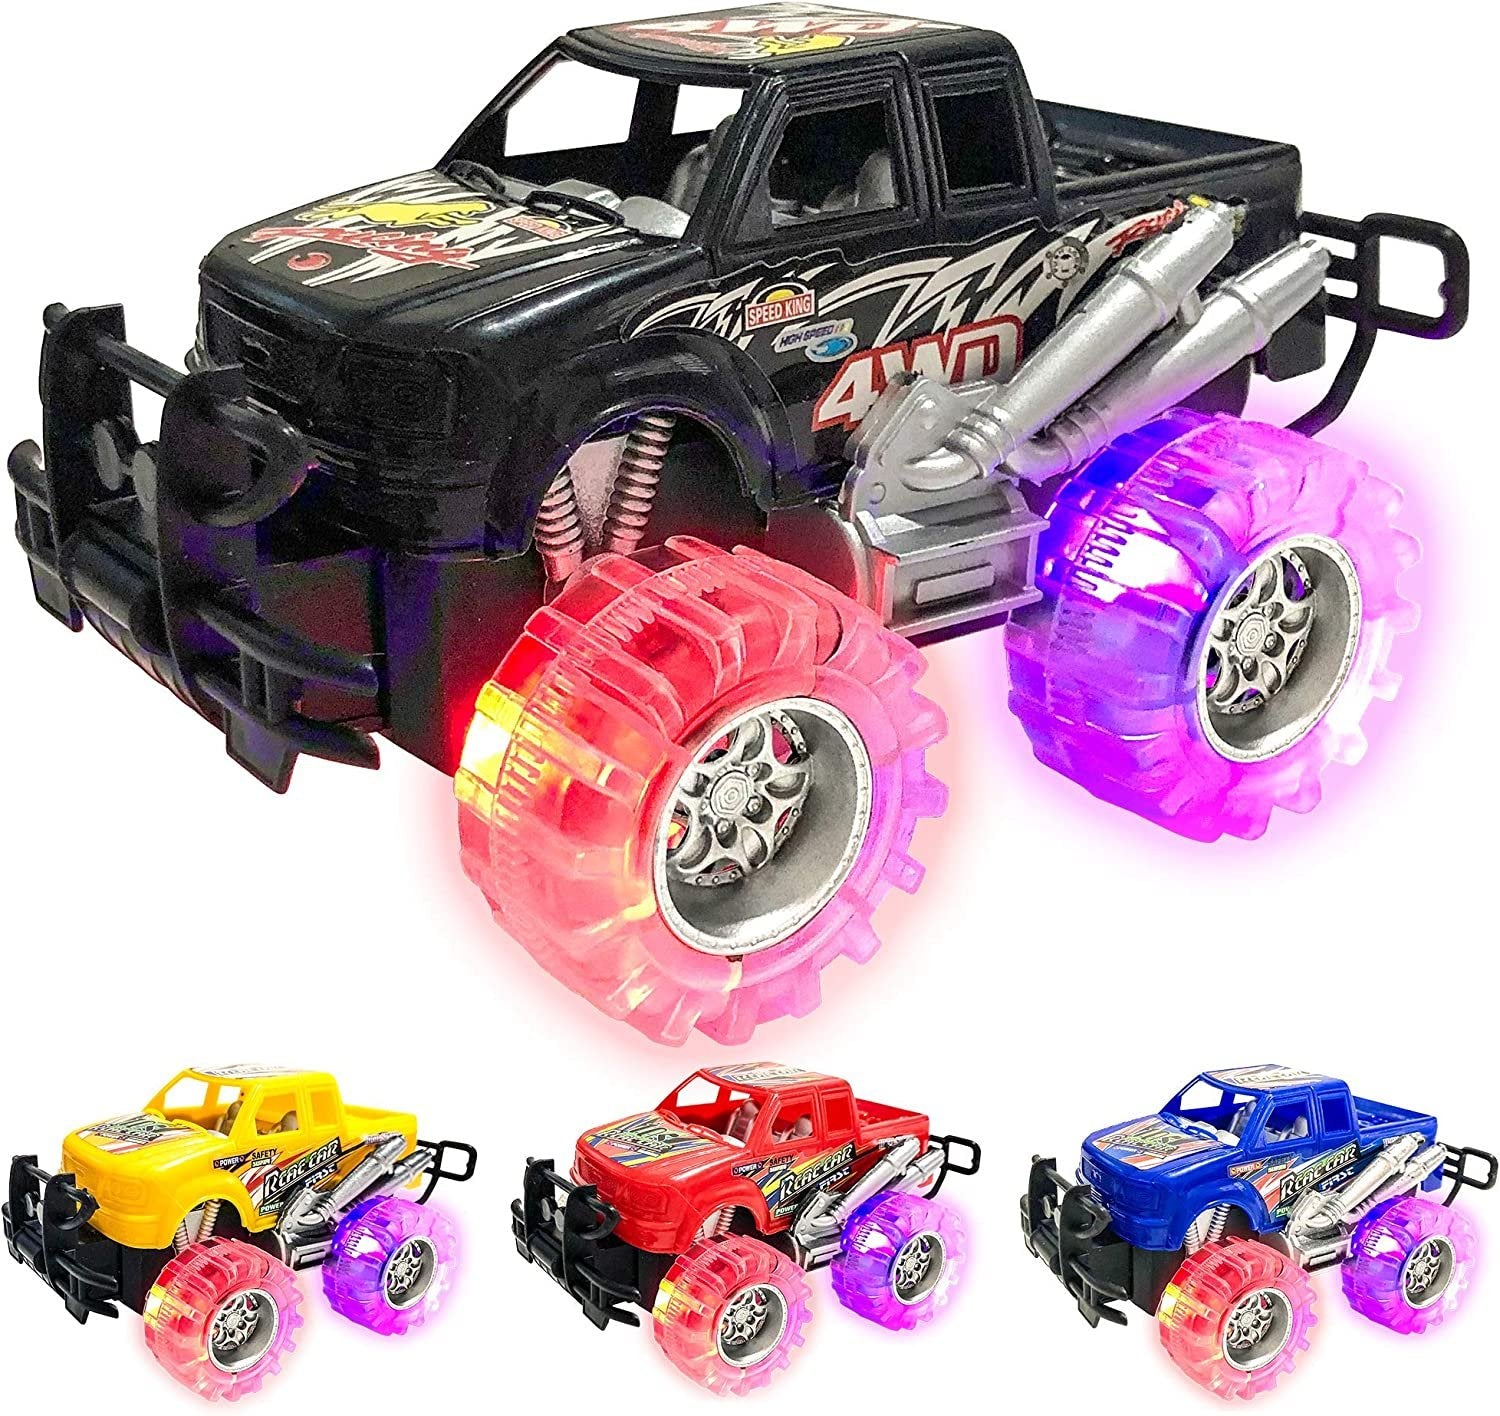 4 Light Up Monster Trucks, 6